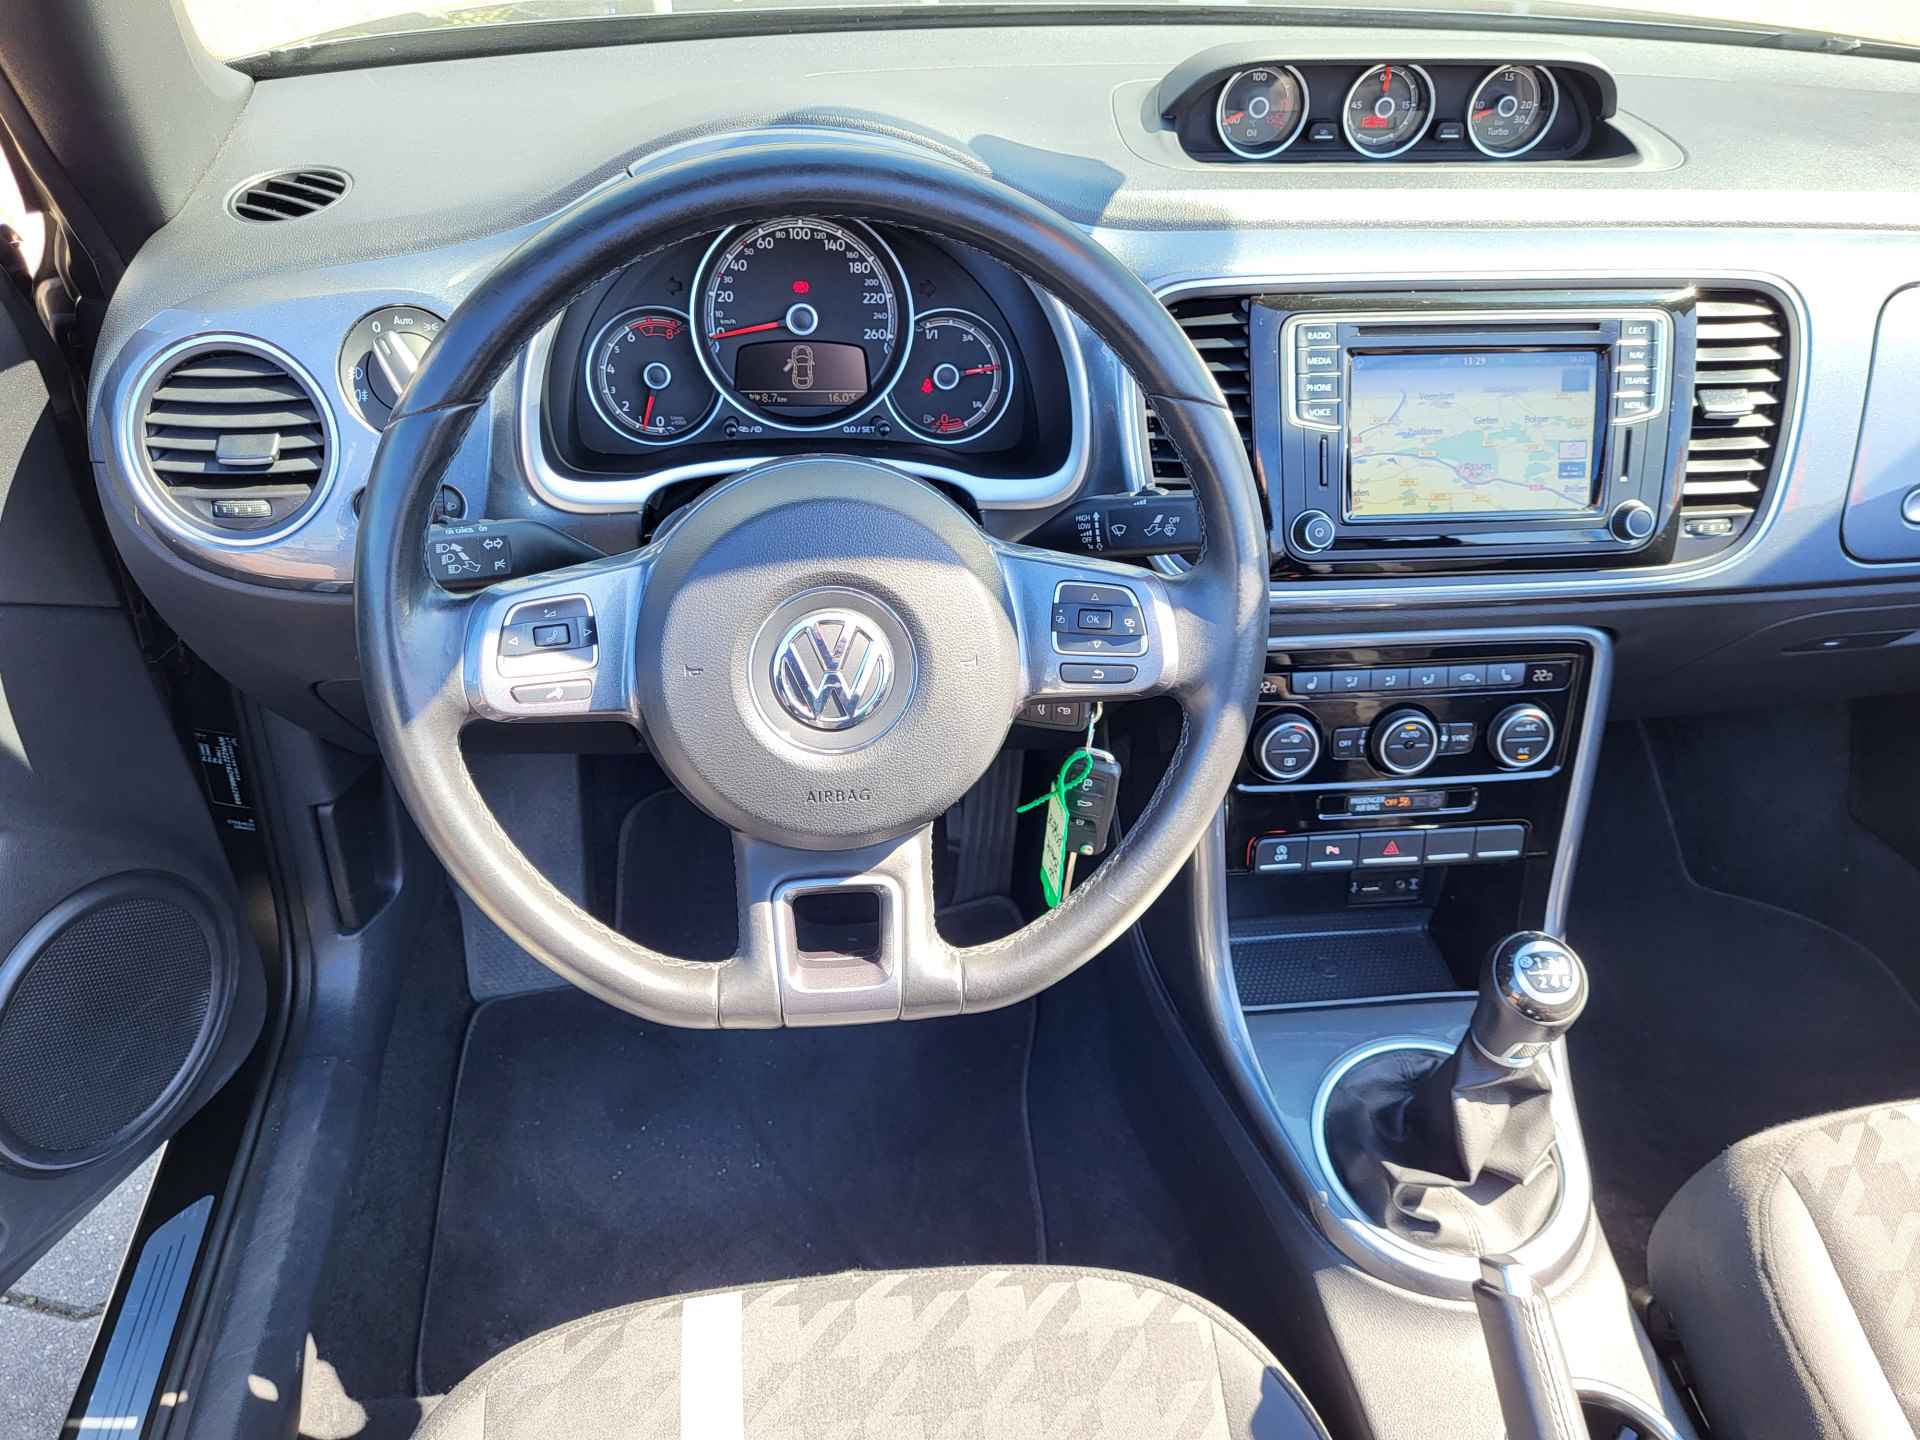 Volkswagen Beetle Cabriolet 1.2 TSI Exclusive Series, Rijklaar met beurt & garantie! - 10/27